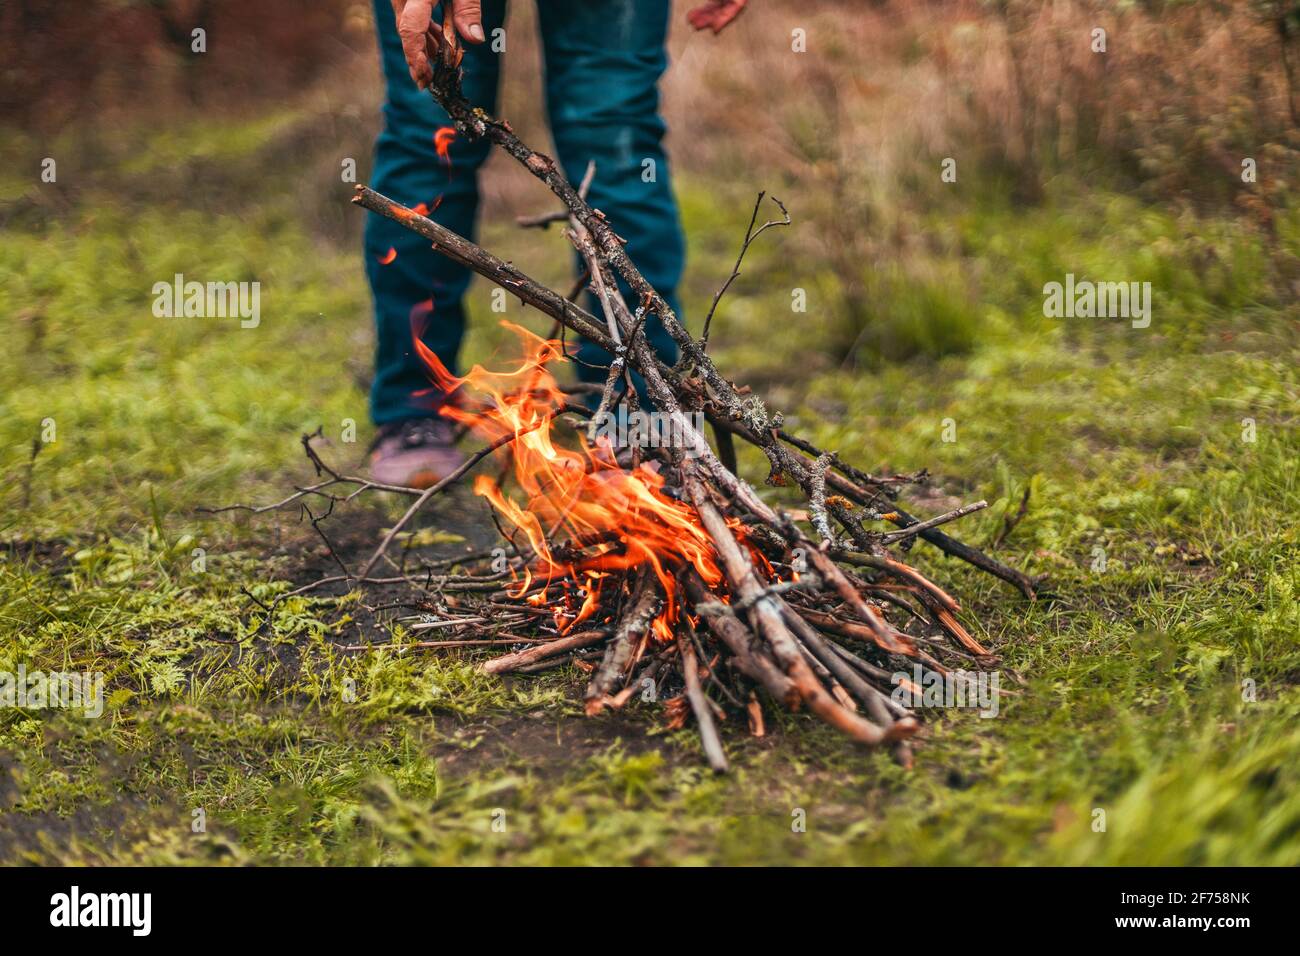 Frauenhänden entzünden ein großes Lagerfeuer im Wald. Person, die Feuer macht Stockfoto